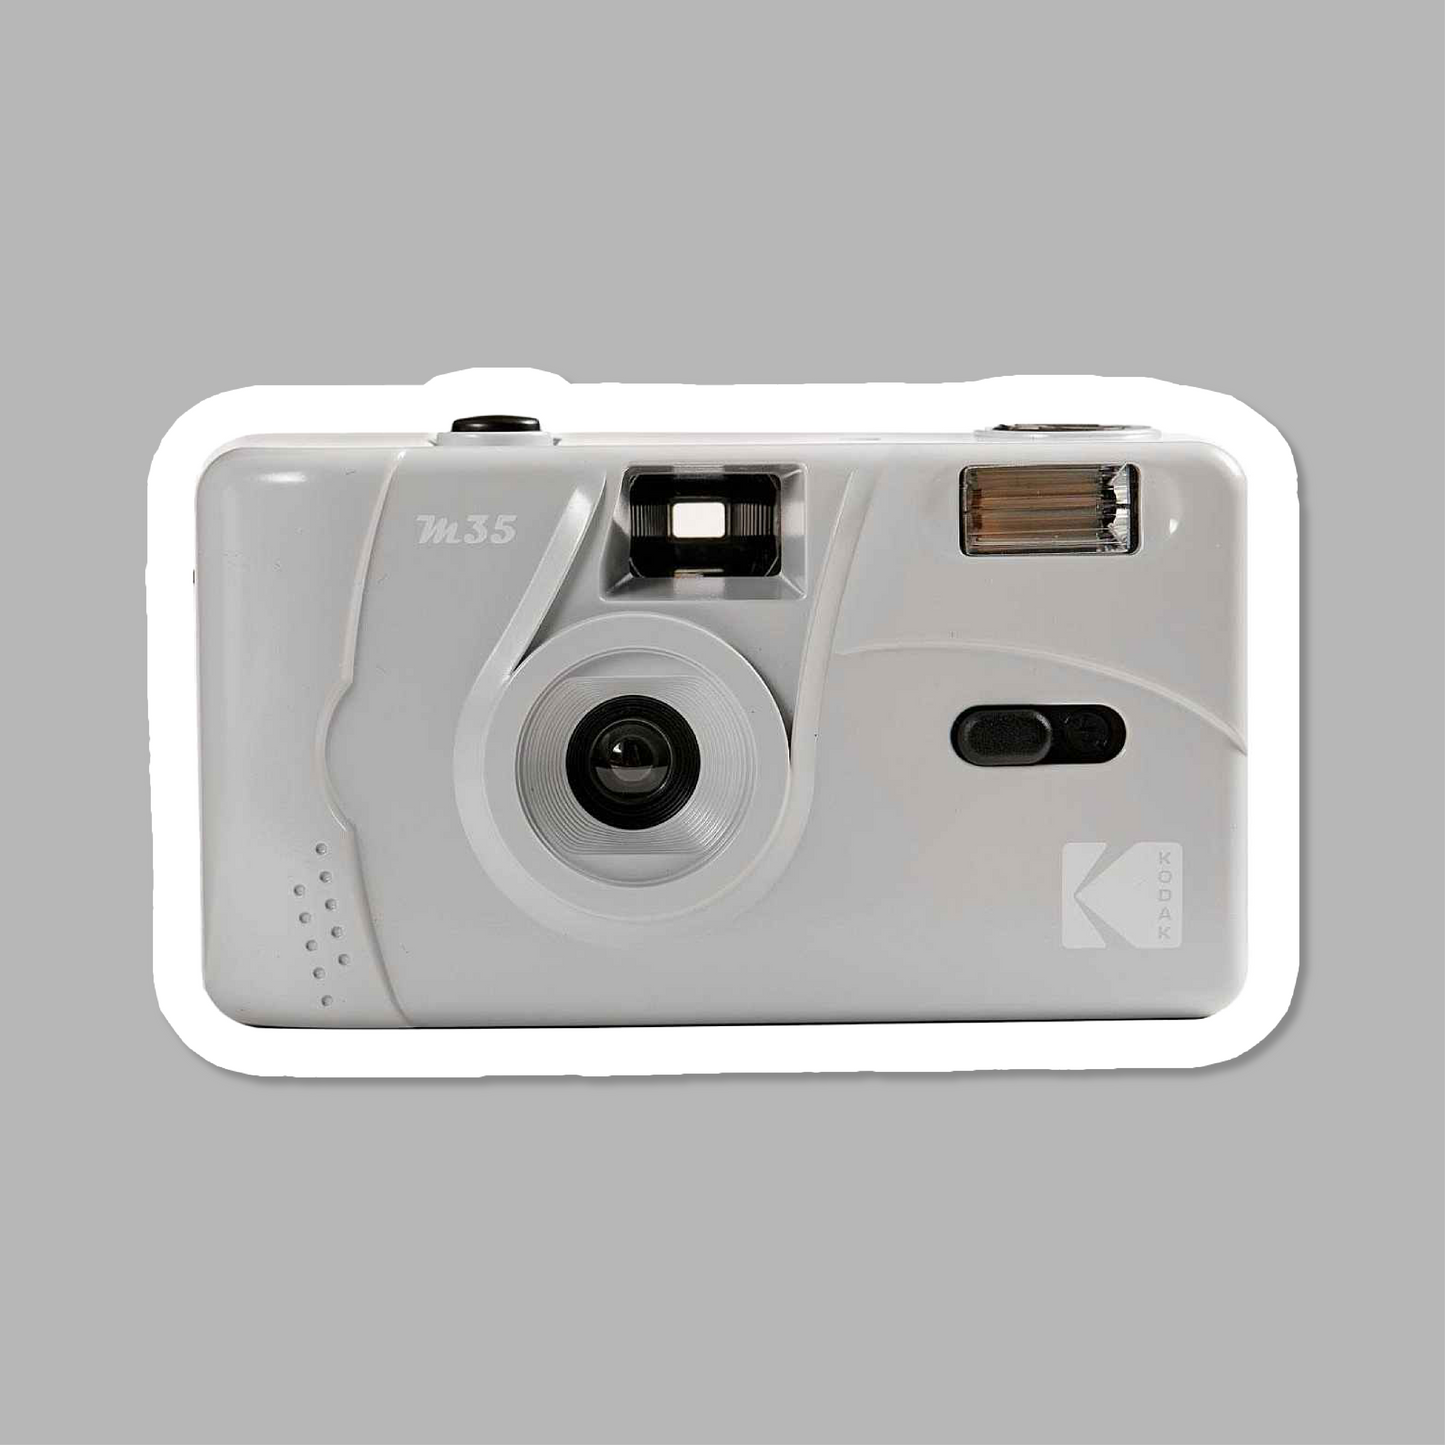 【ギフトBOX】 Kodak M35 フィルムカメラ